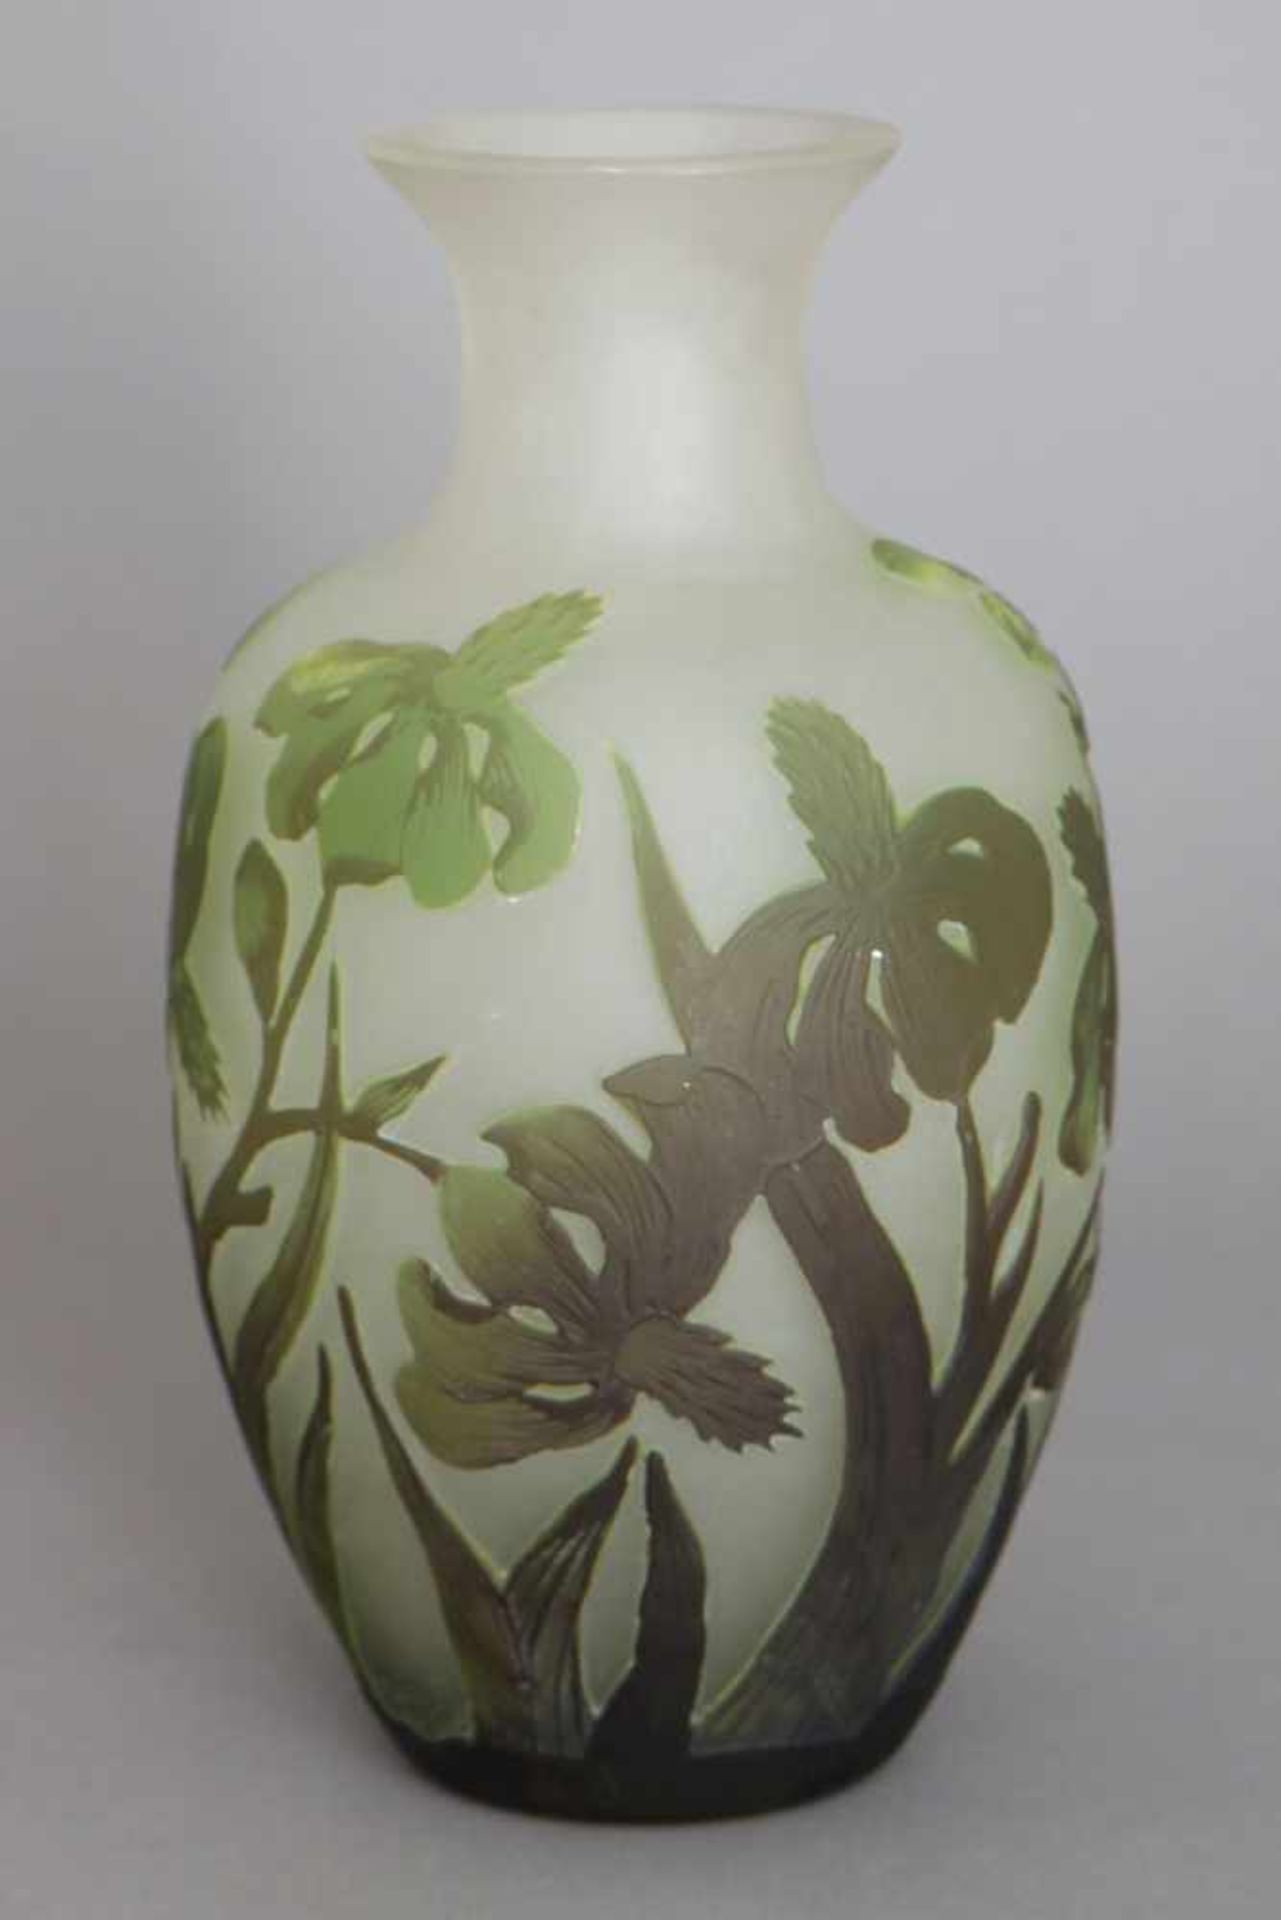 Vase im Stile des französischer Art NouveauGlas, farblos, satiniert und grün überfangen,